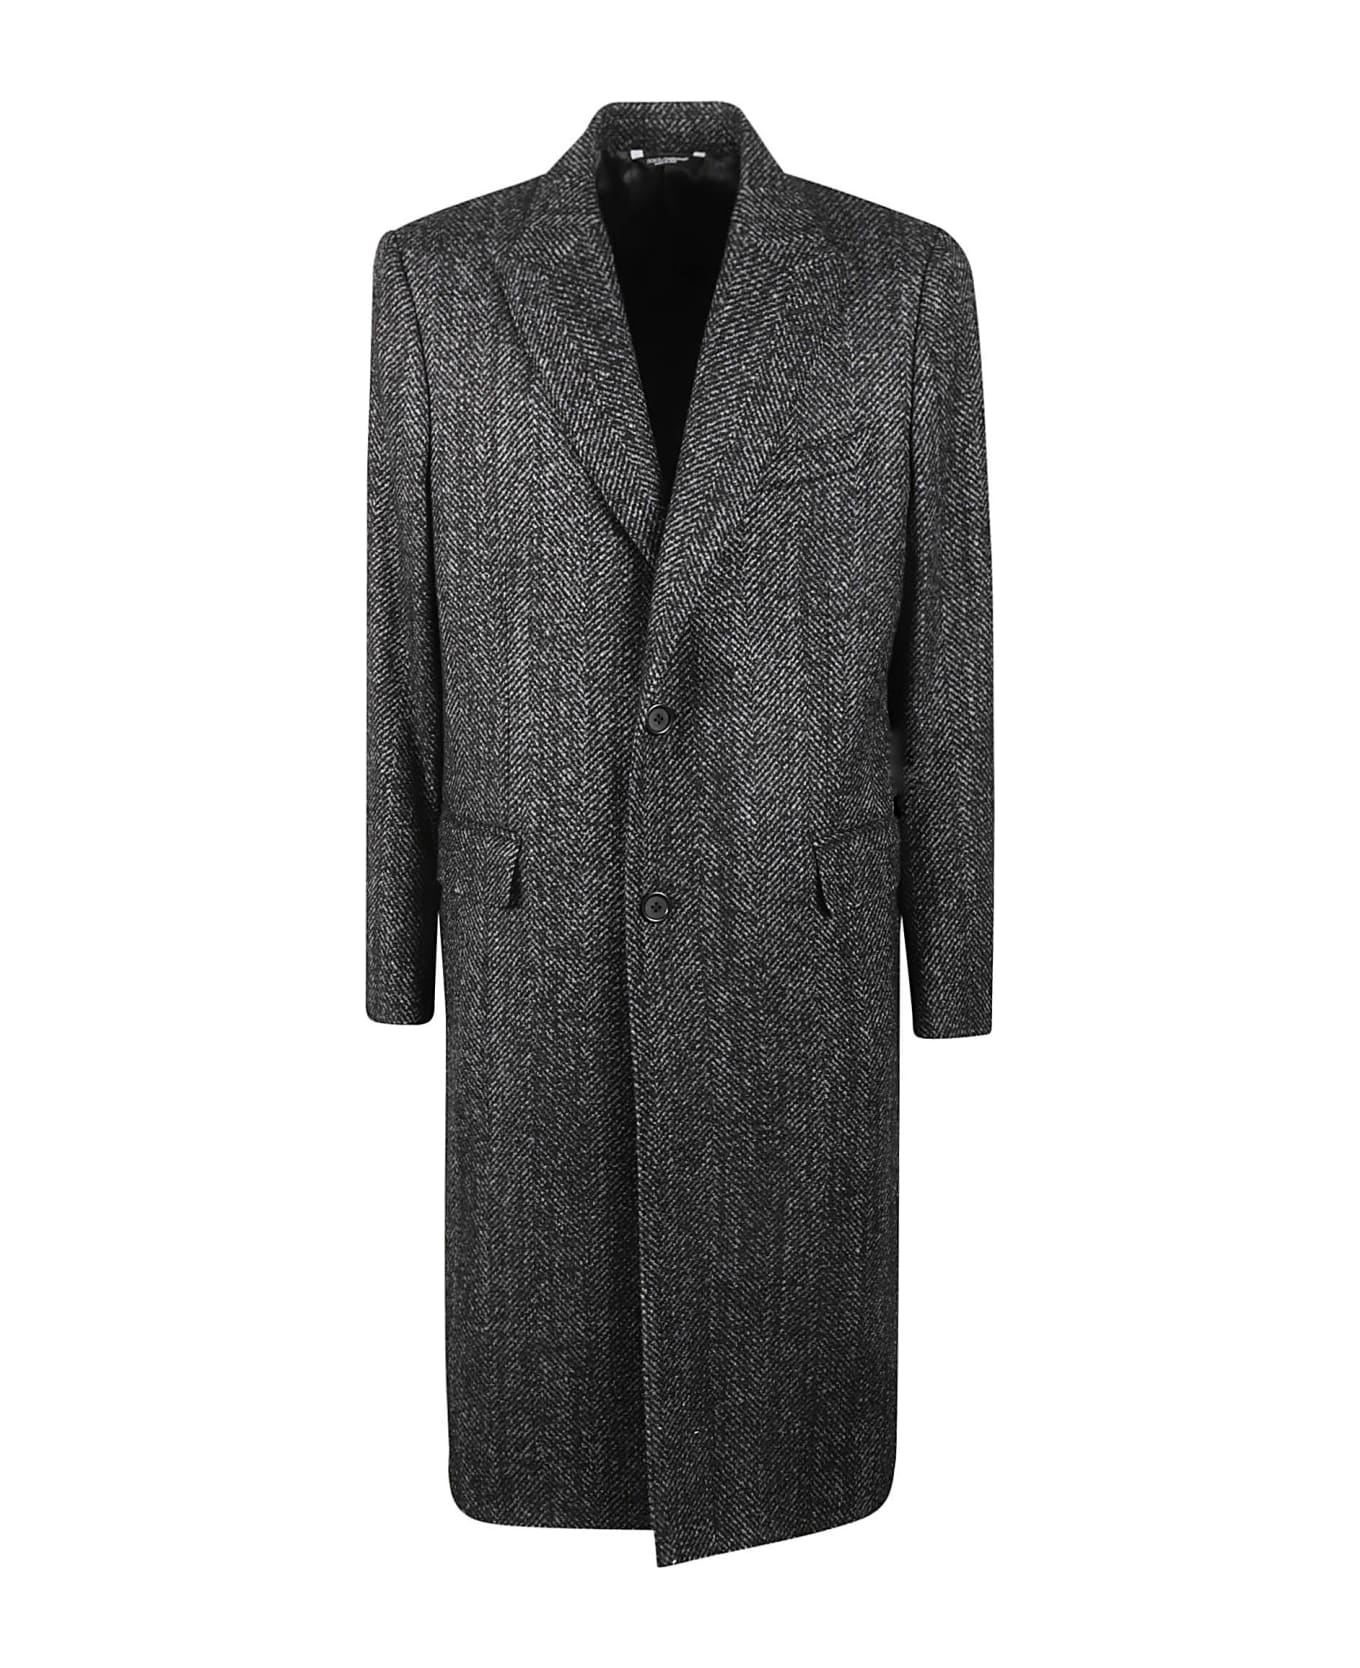 Dolce & Gabbana Buttoned Long Blazer Coat コート